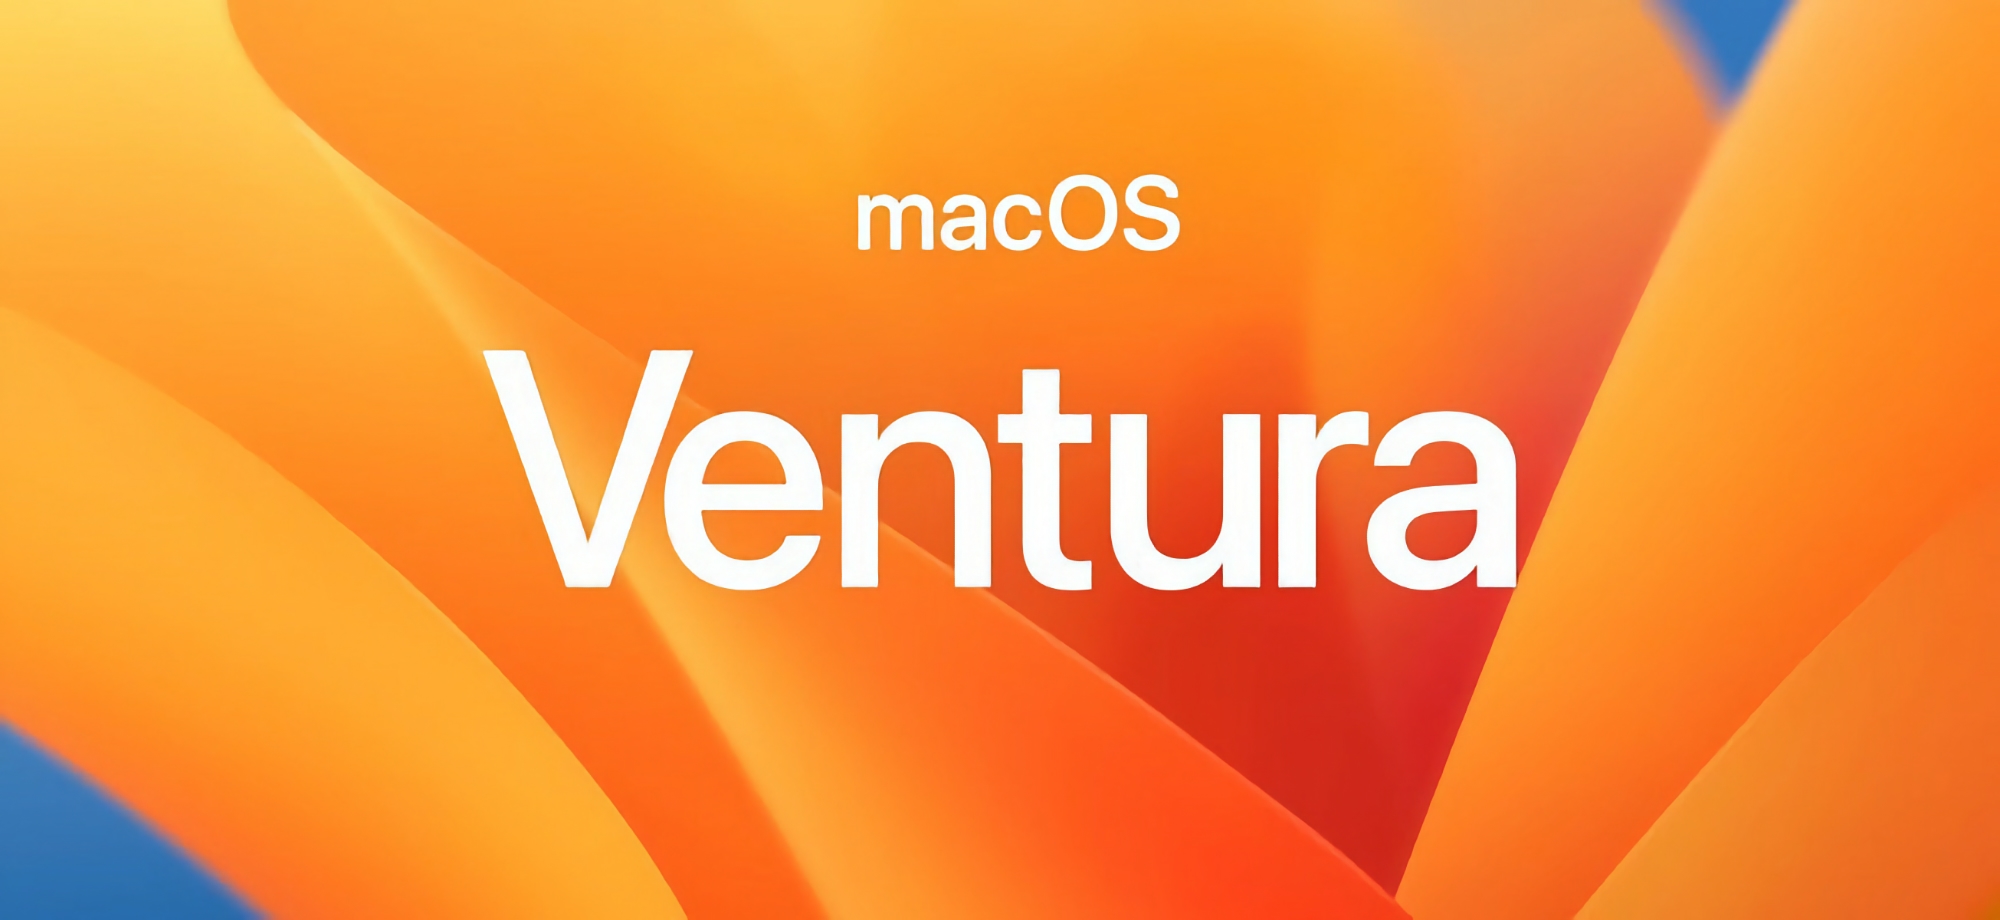 Nach iOS 16.1.1 und iPadOS 16.1.1: Apple kündigt macOS Ventura 13.0.1 Update an